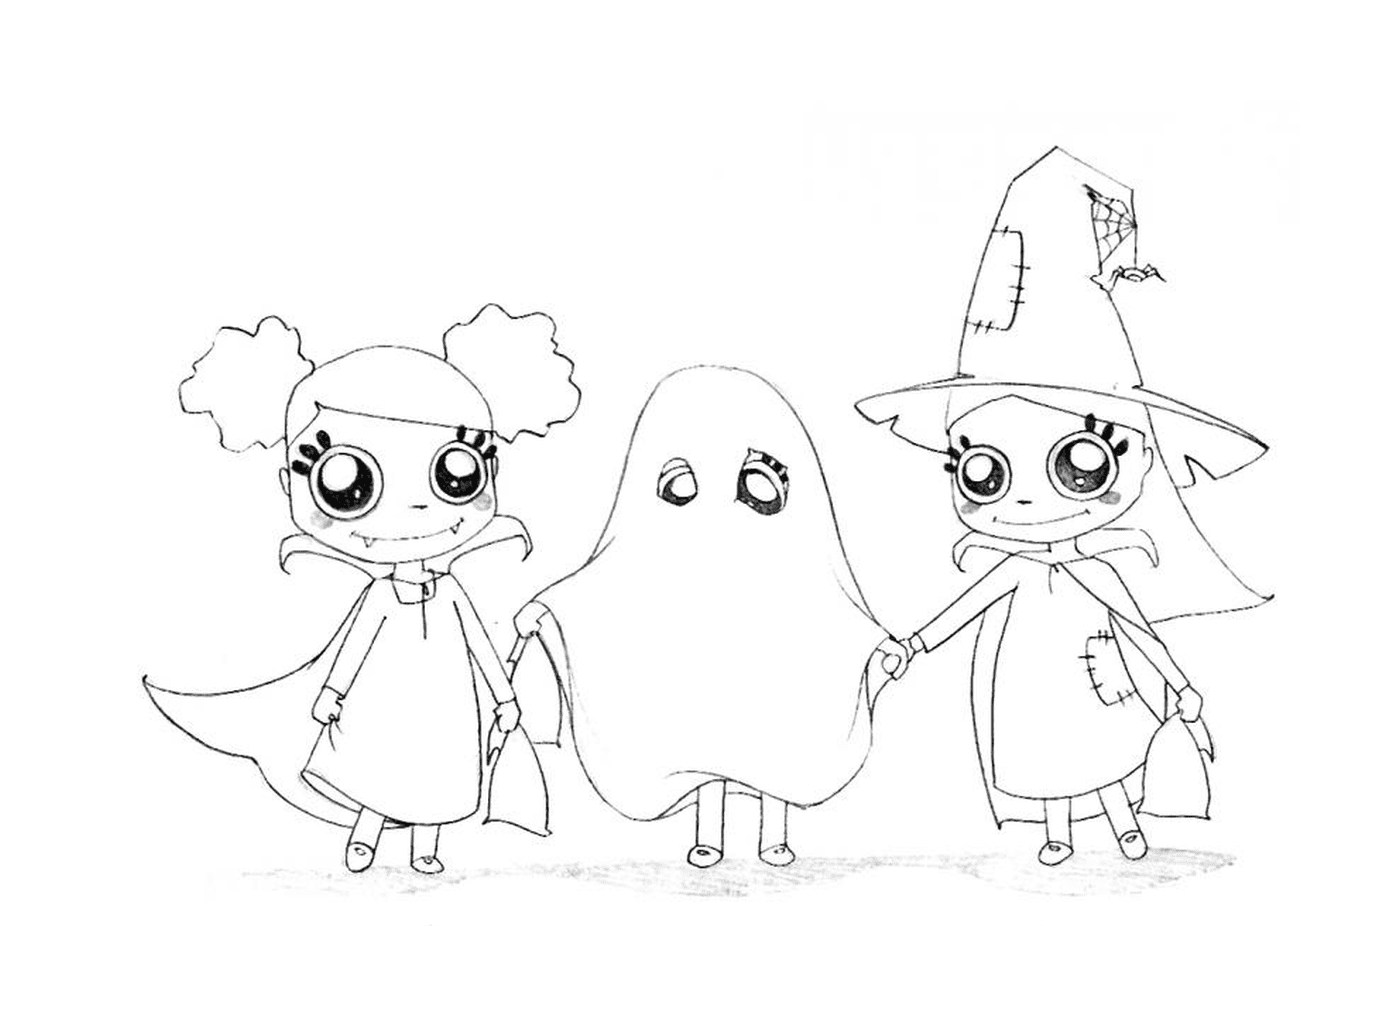  Brujas y el fantasma de Halloween 